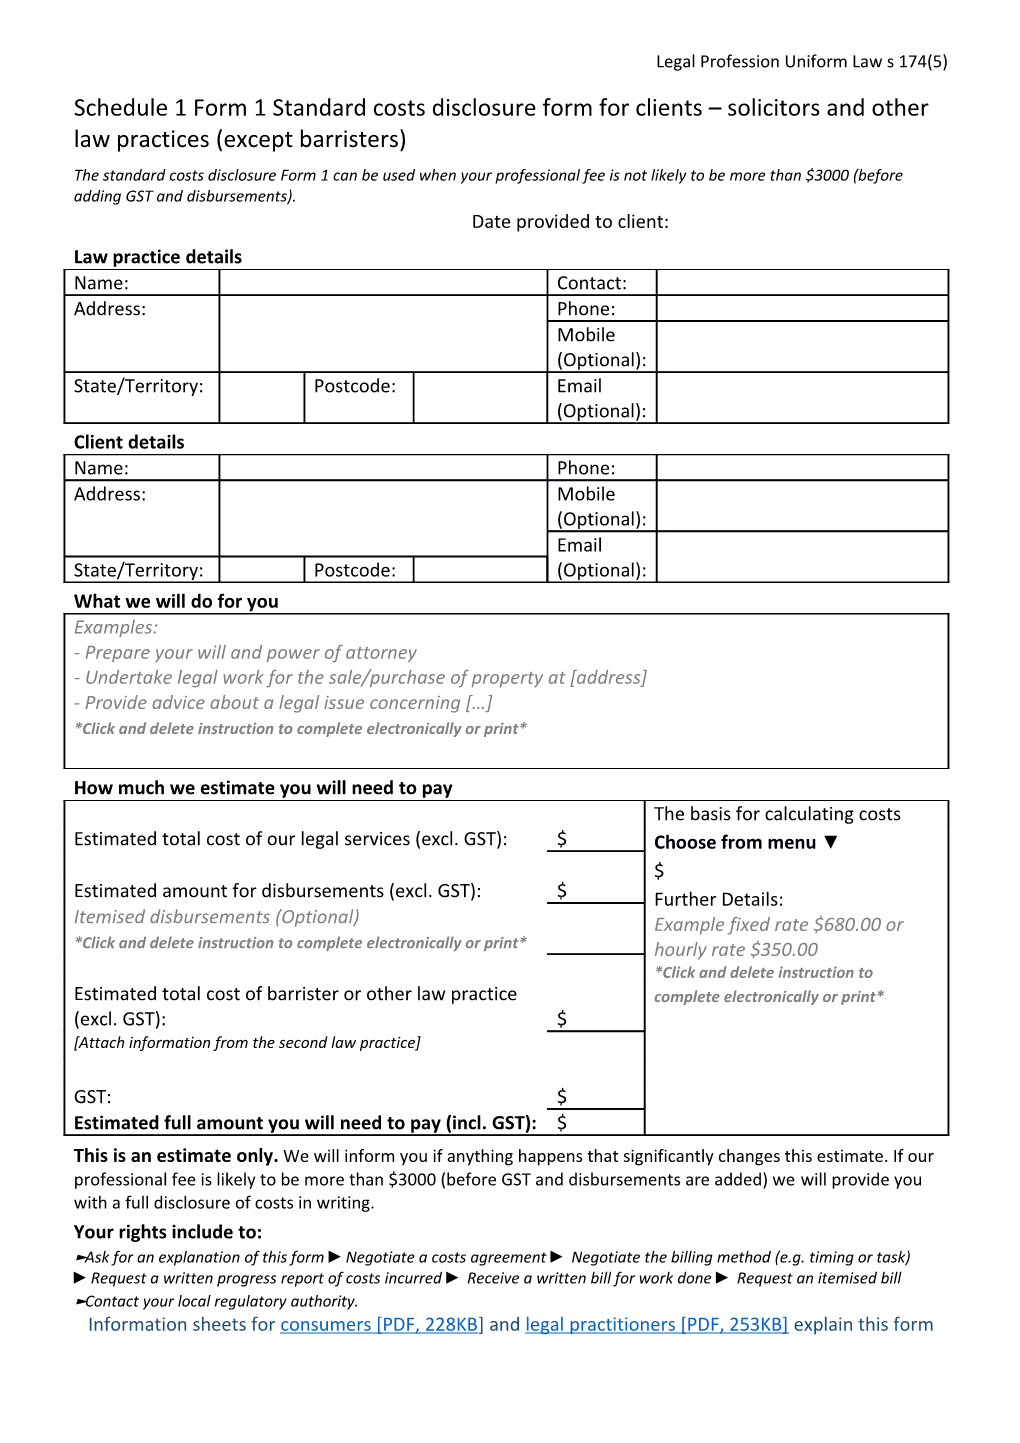 Form 1 - Solicitors Standard Cost Disclosure Form